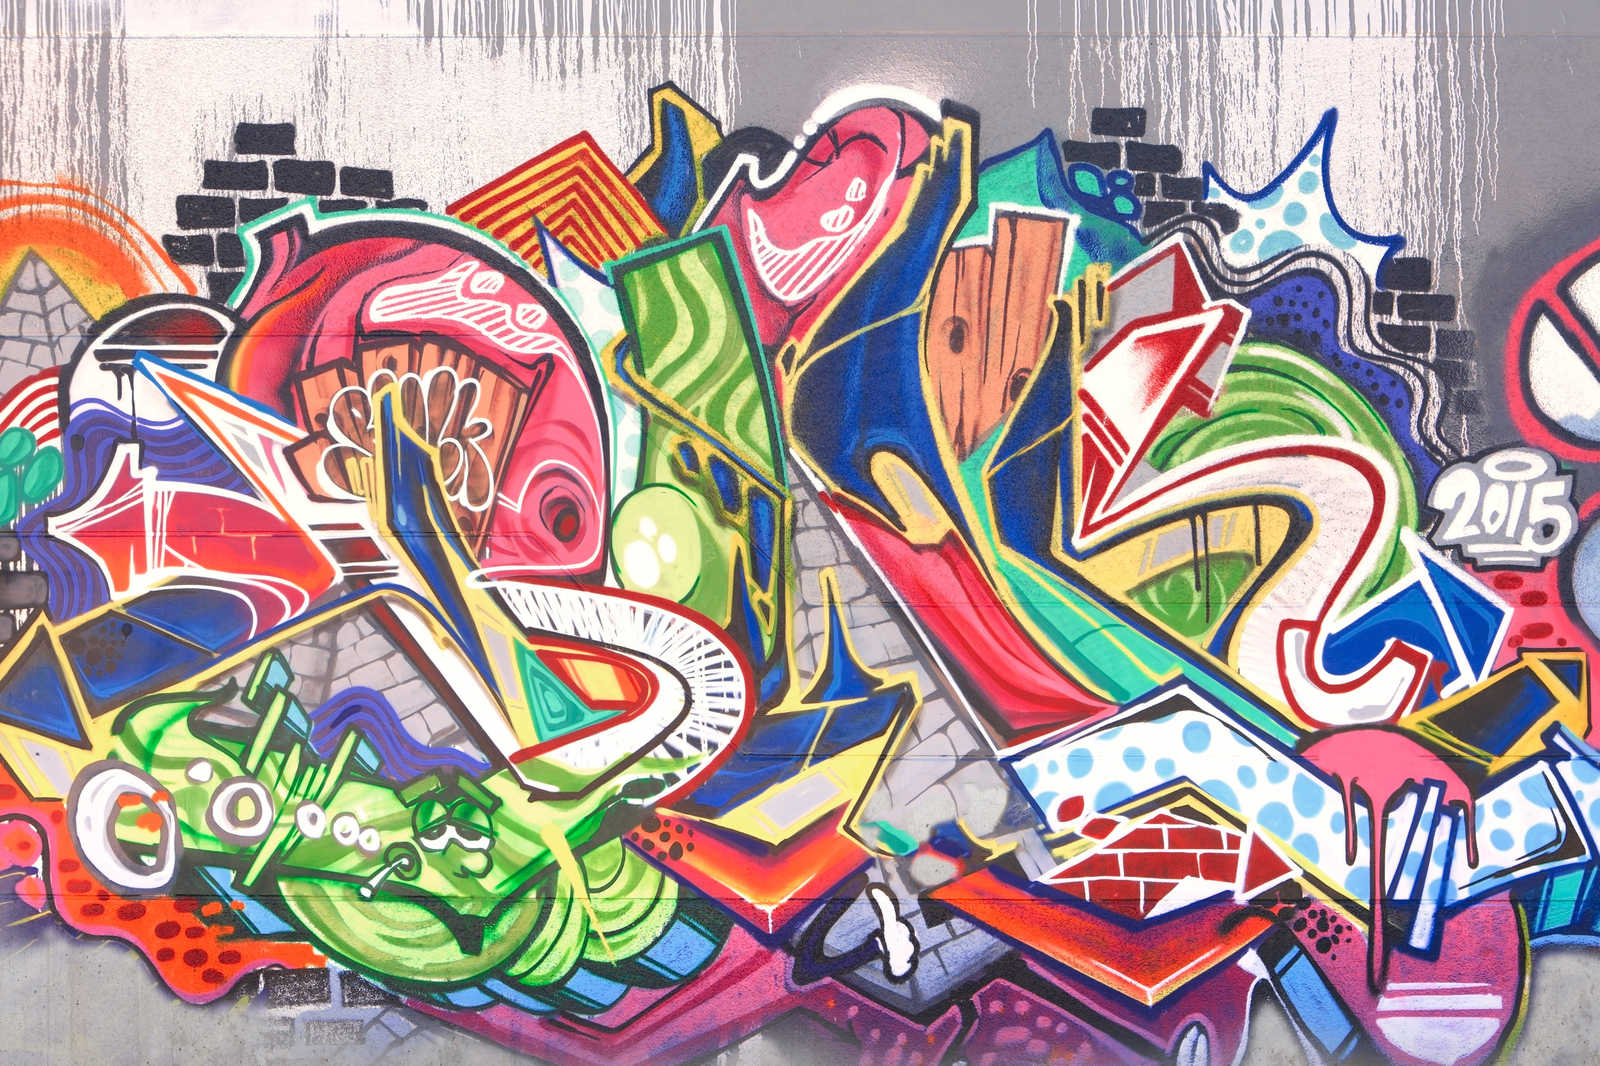             Urban Graffiti Wall Canvas - 0.90 m x 0.60 m
        